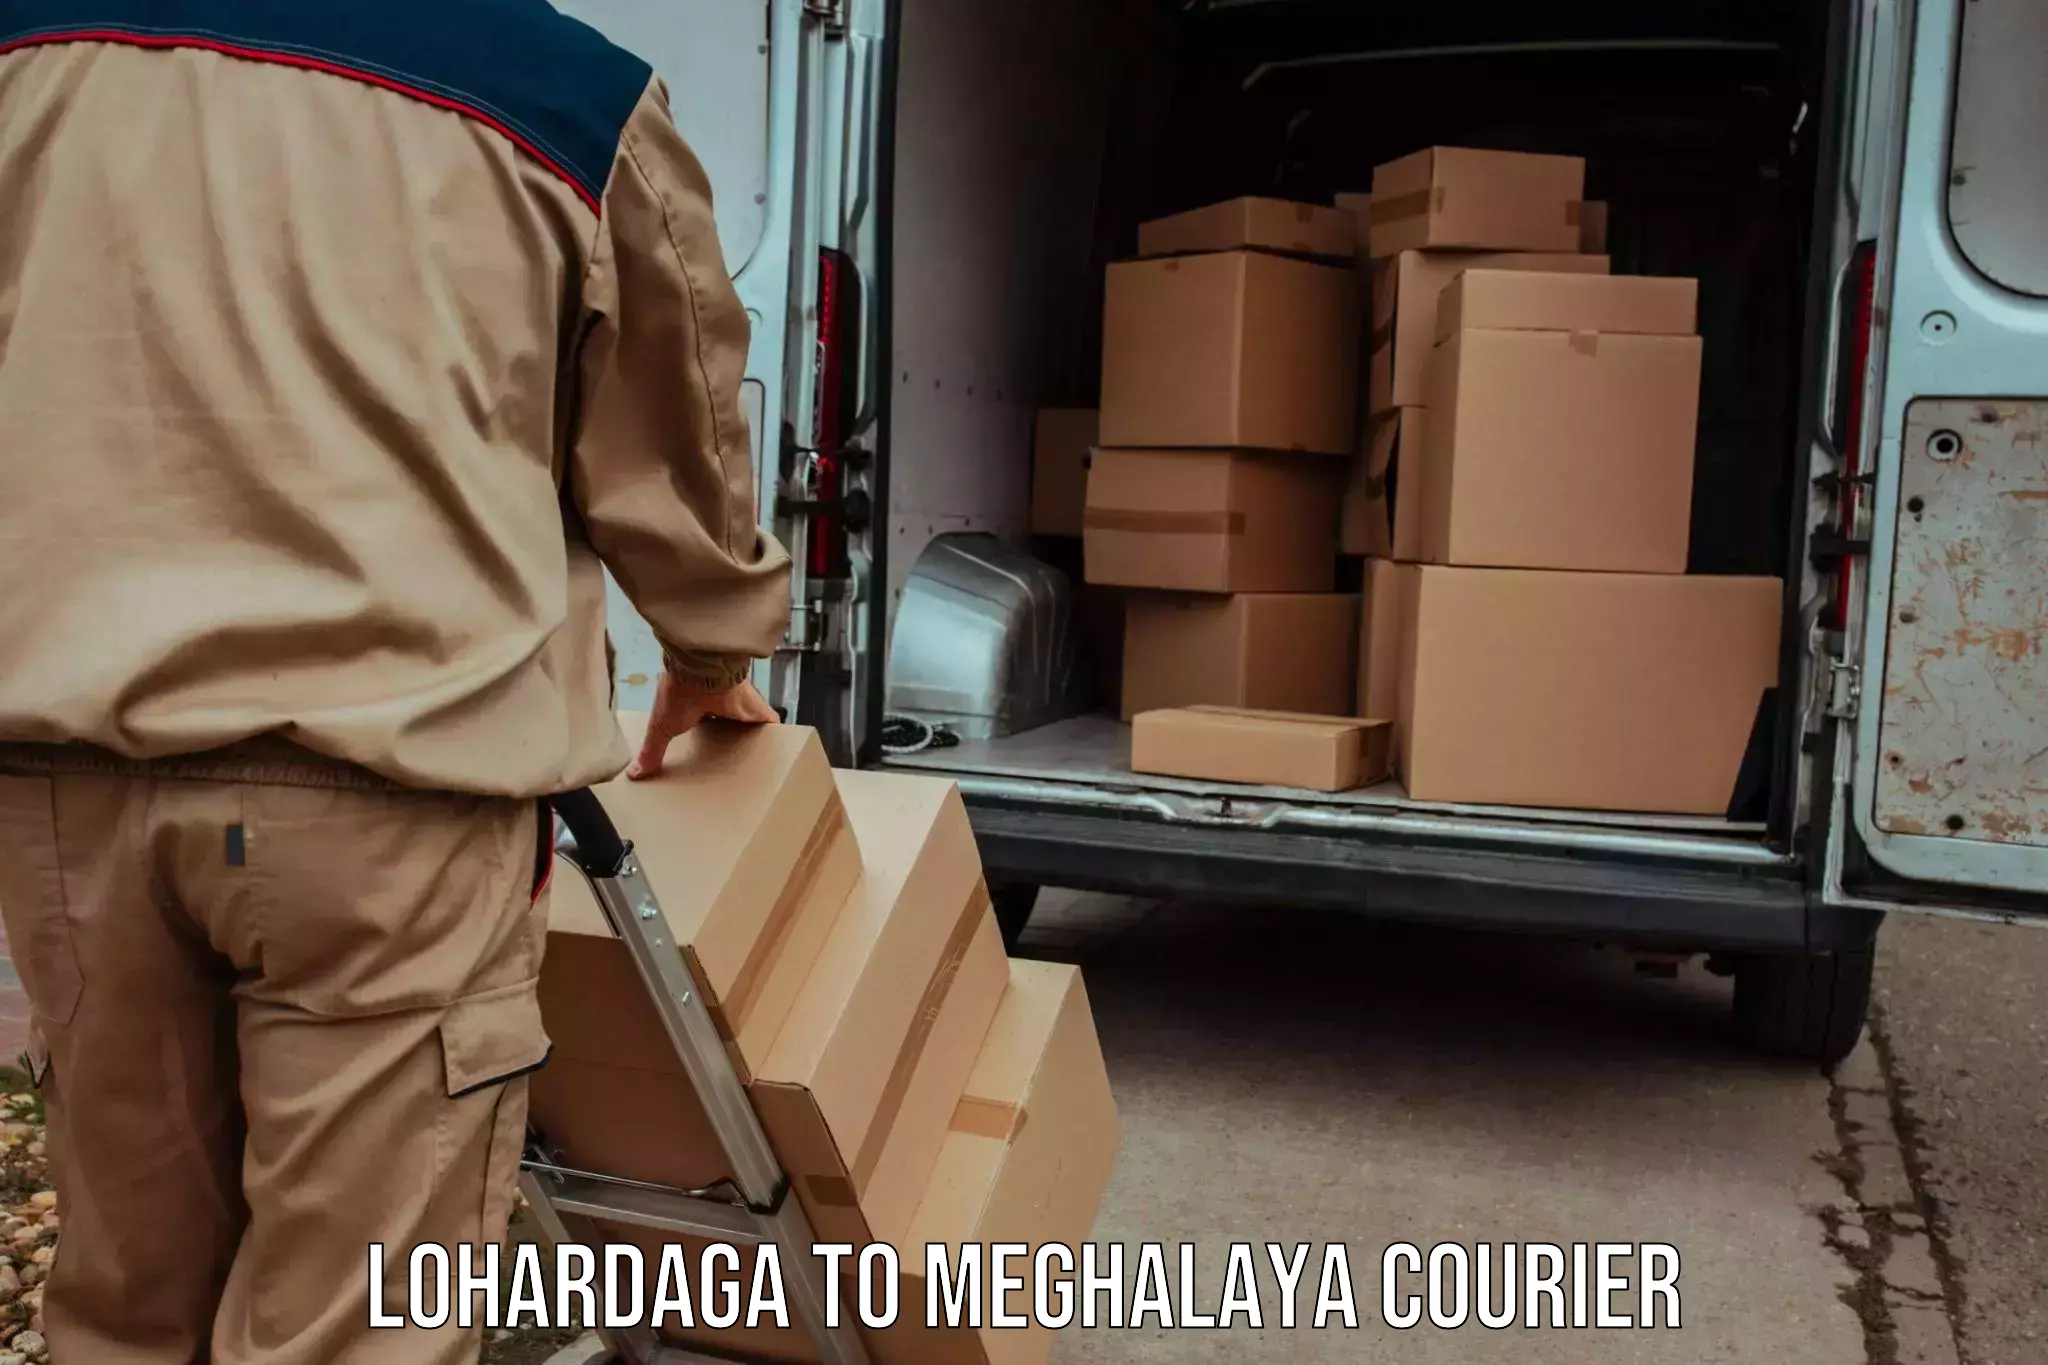 Express mail service Lohardaga to Meghalaya